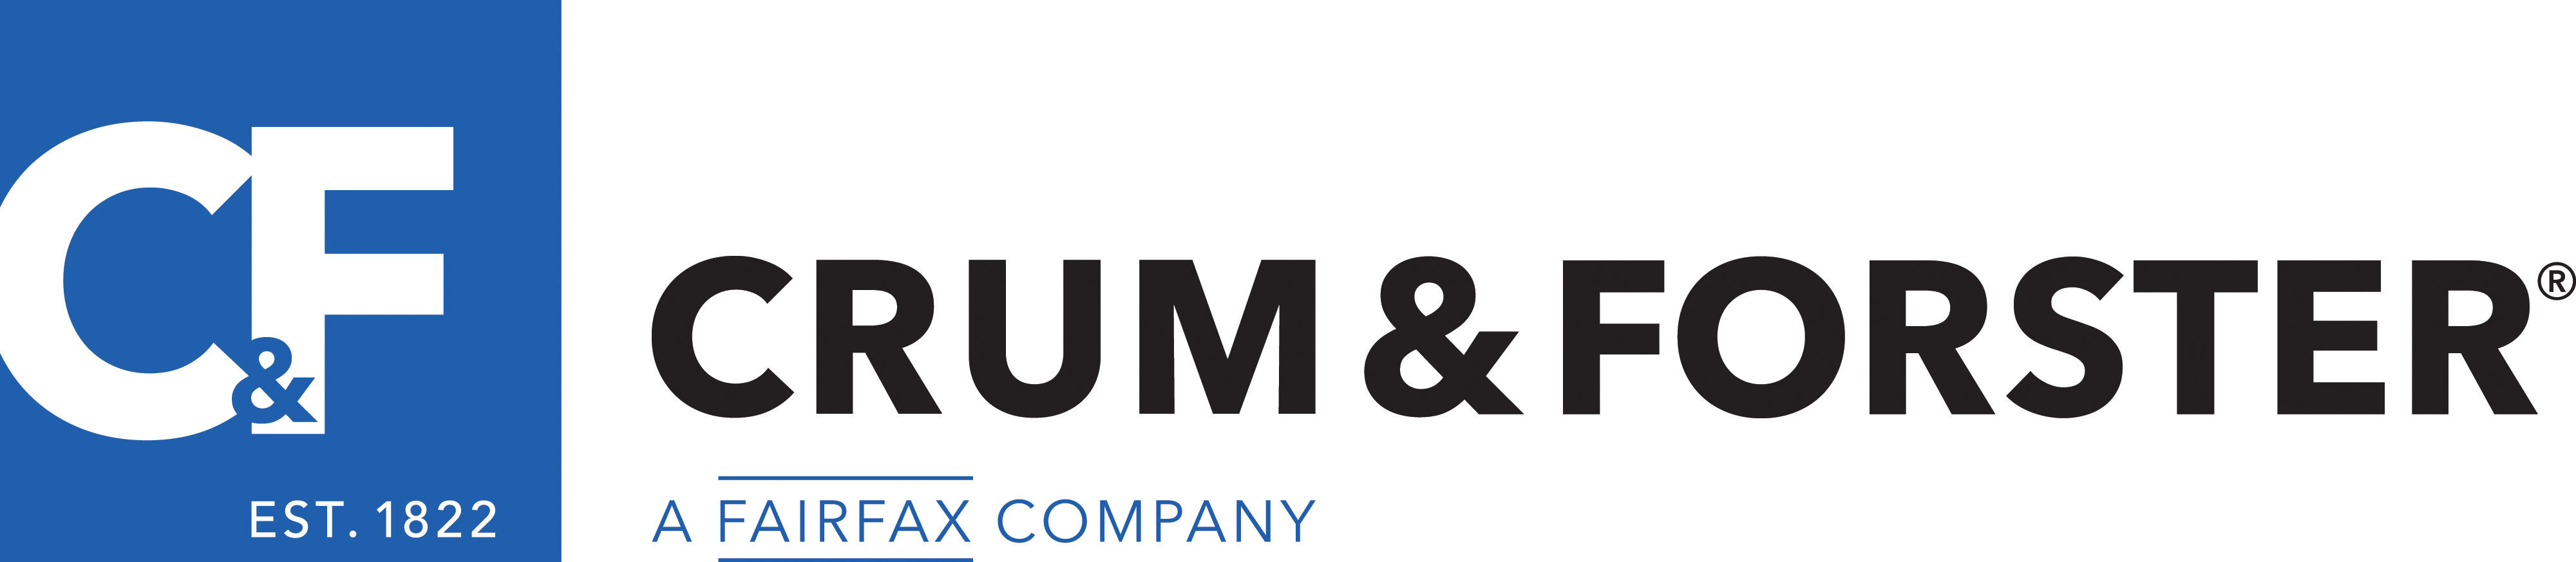 Crum & Forster Brand Logo